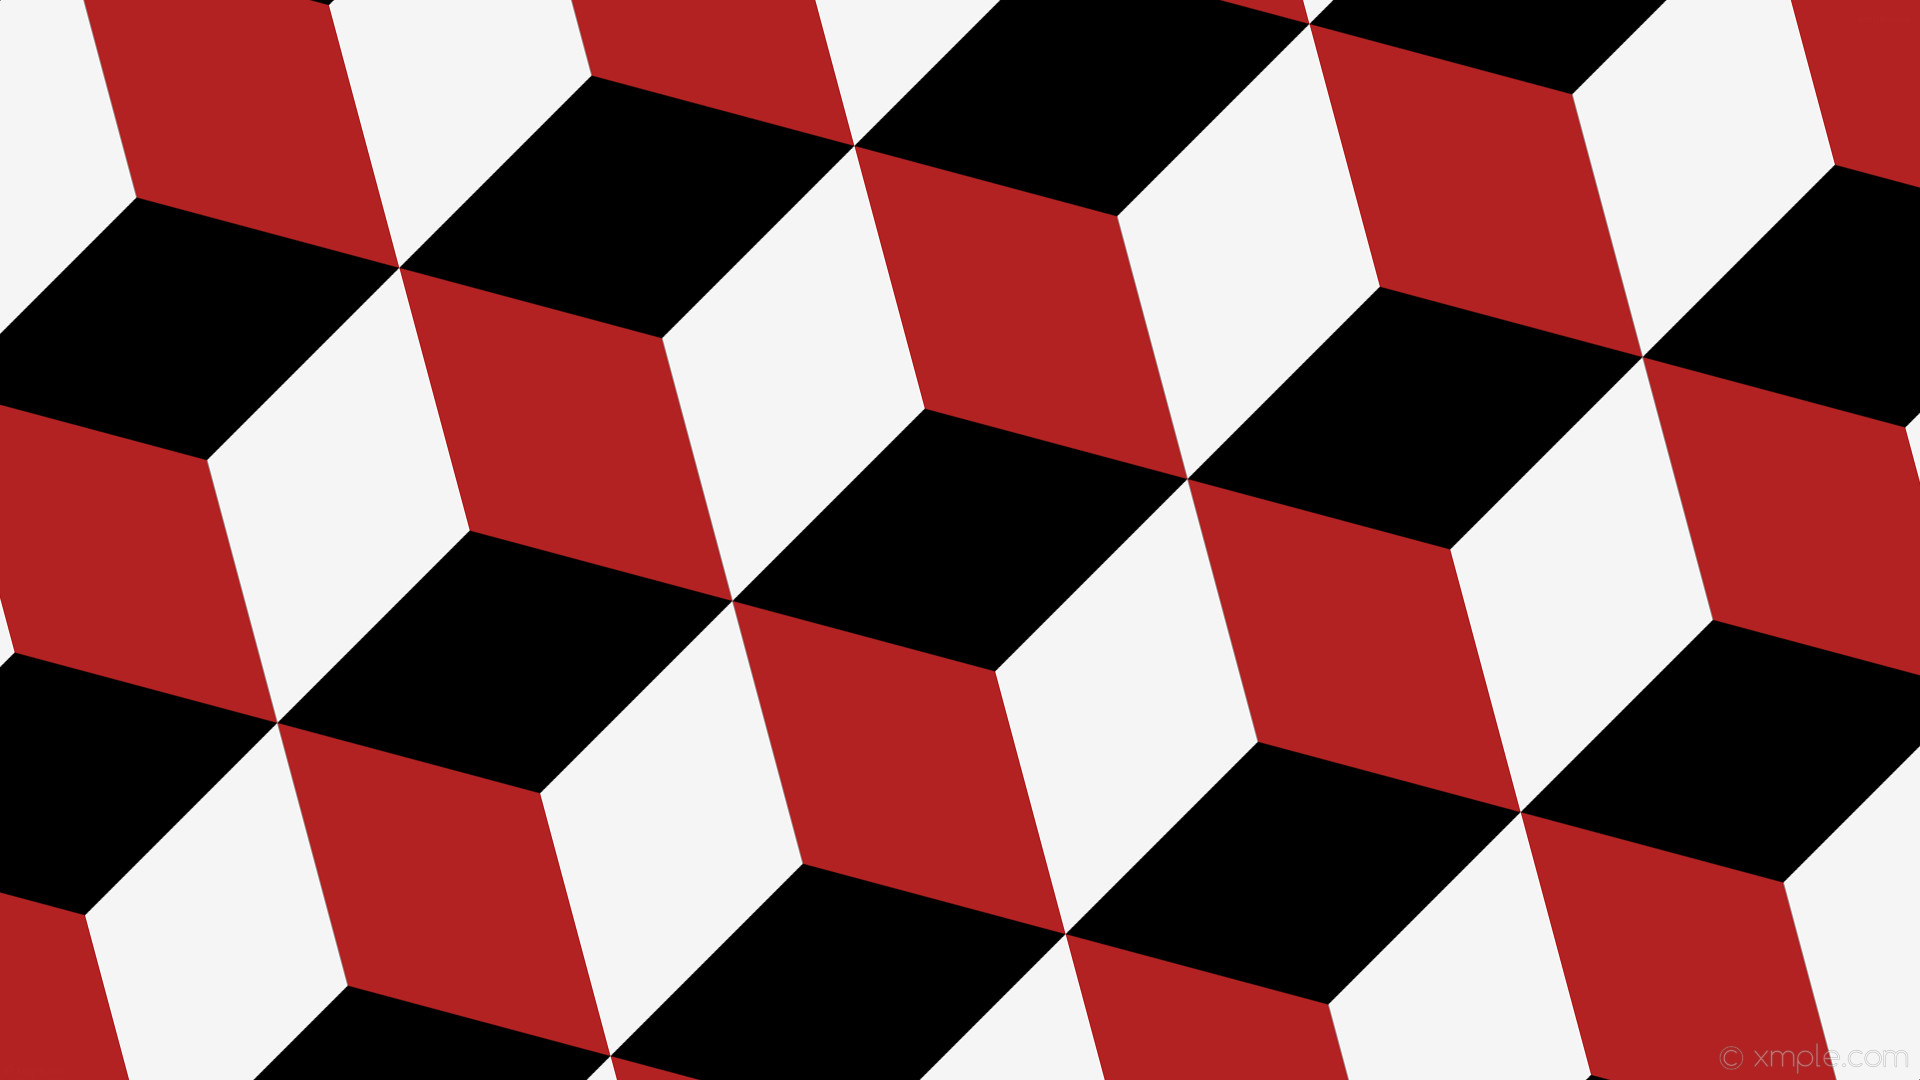 1920x1080 wallpaper red 3d cubes white black fire brick white smoke #000000 #b22222  #f5f5f5